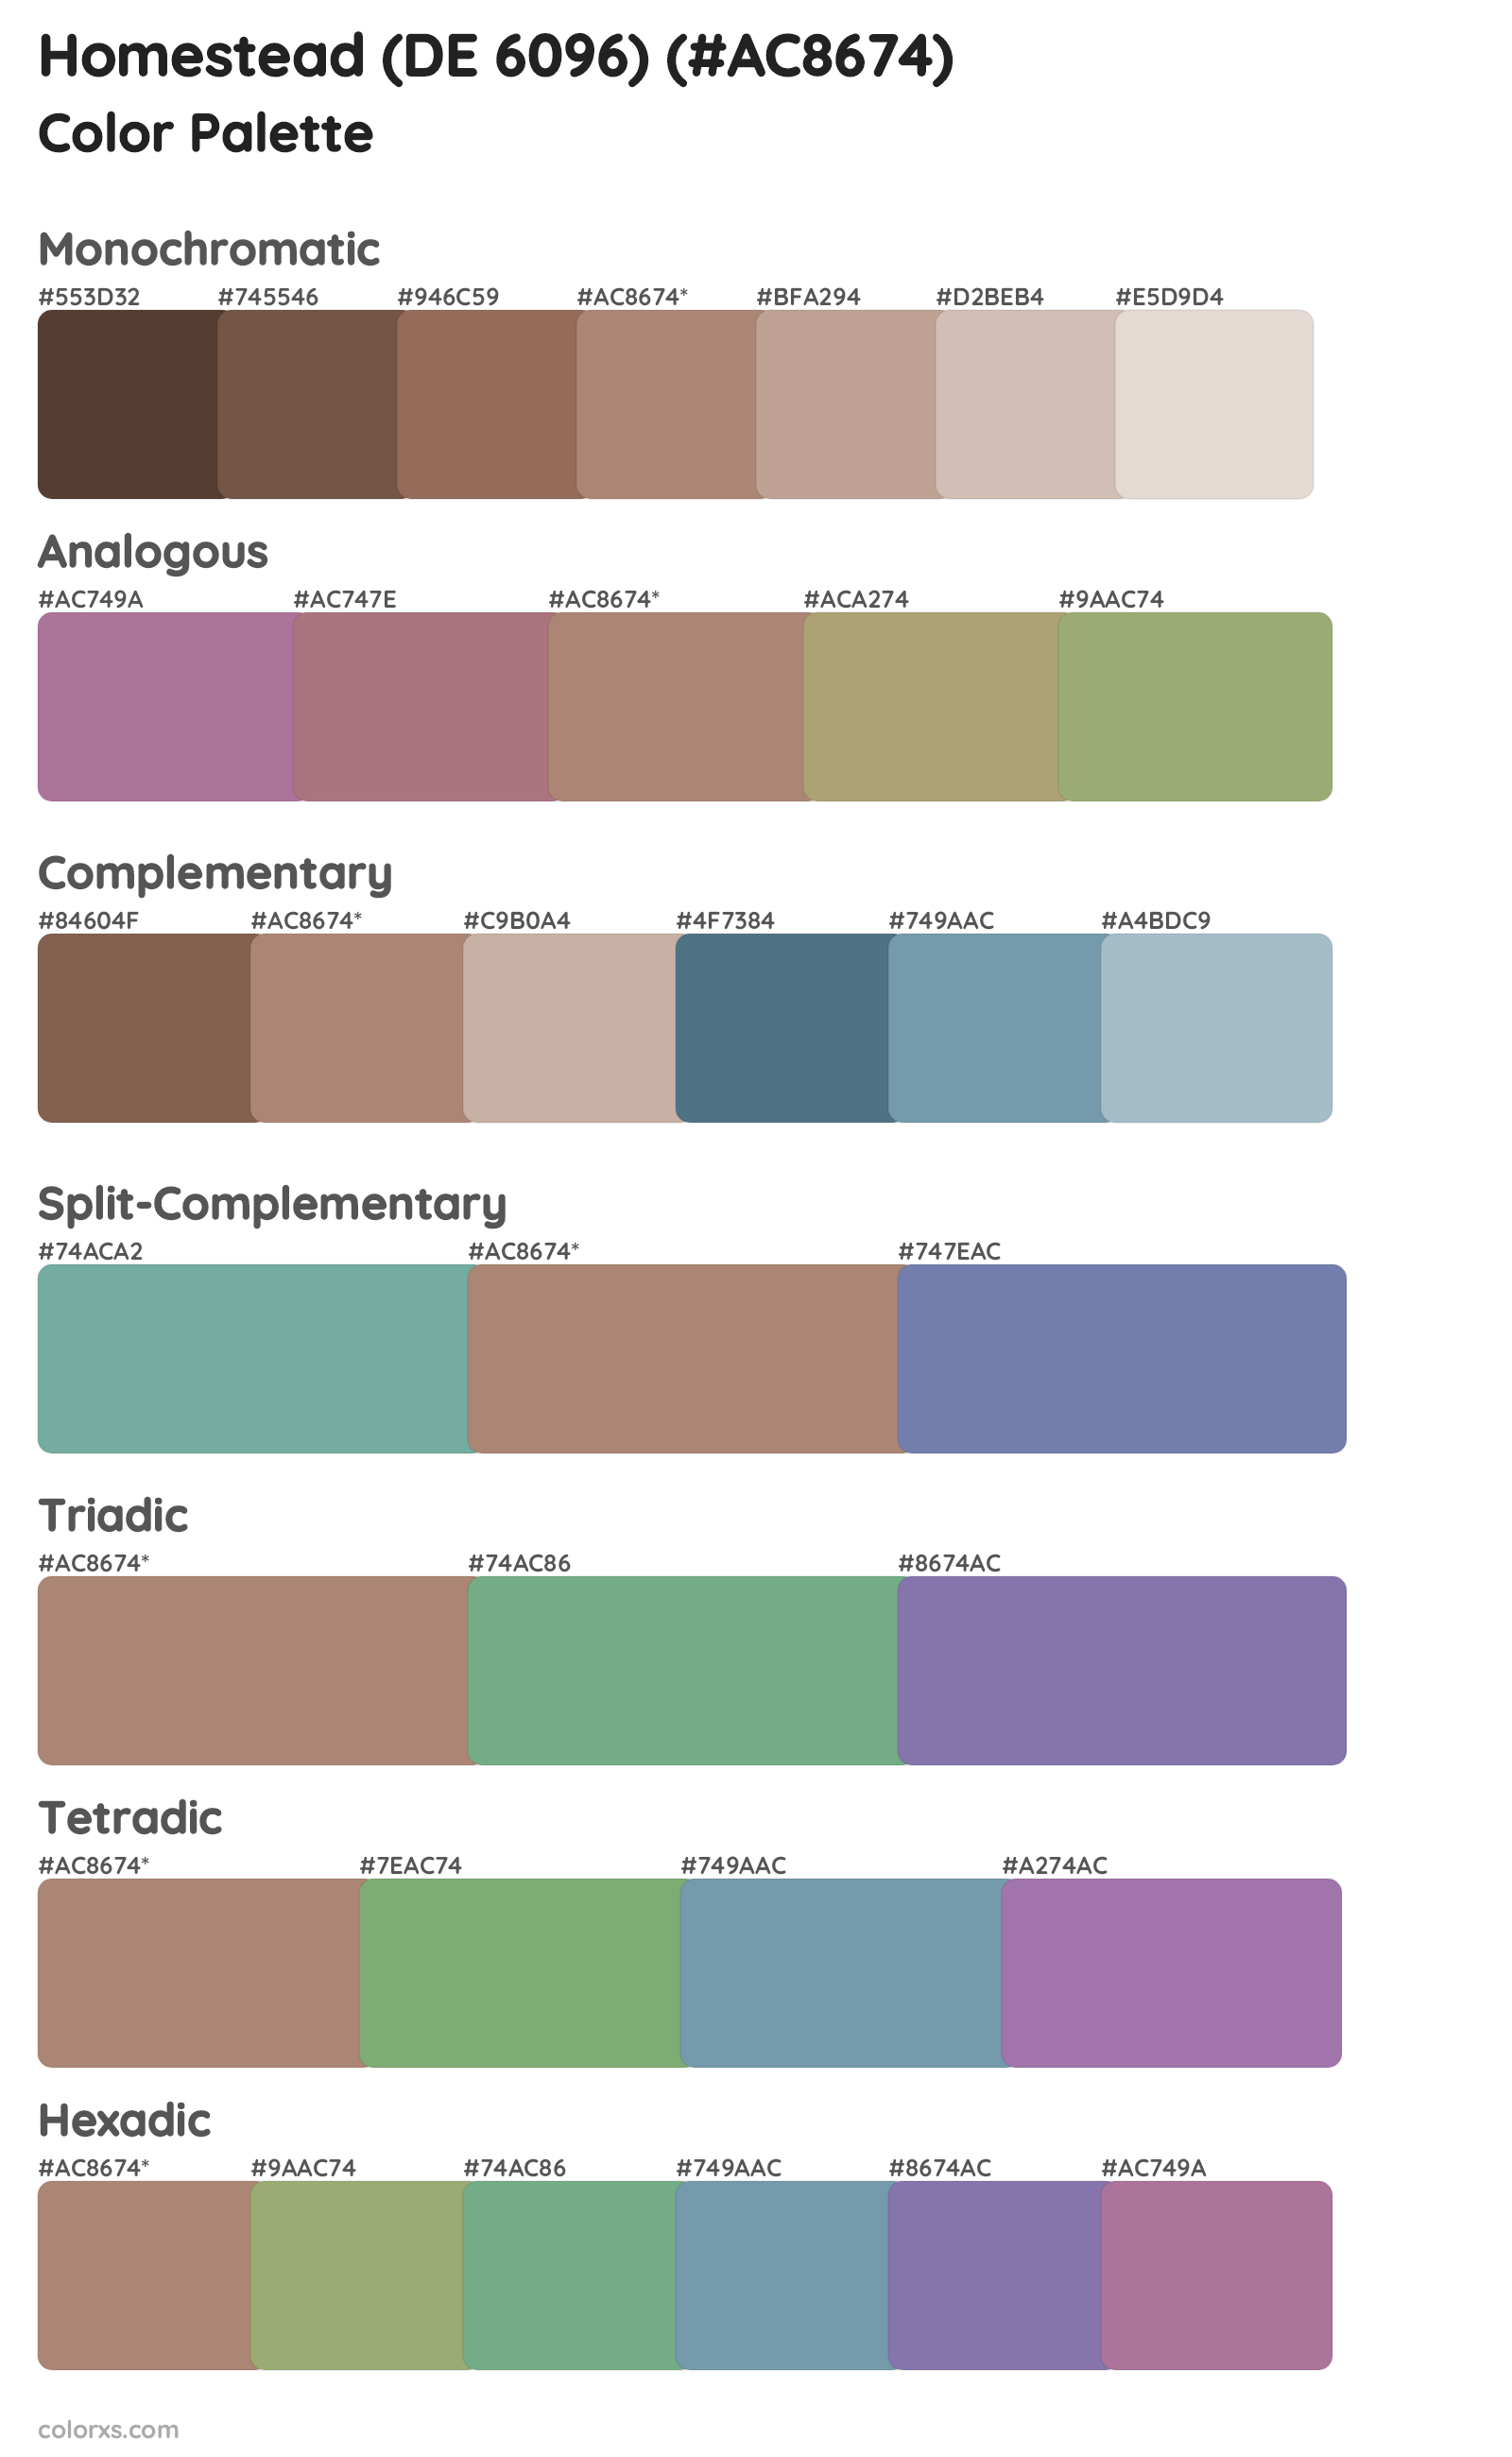 Homestead (DE 6096) Color Scheme Palettes